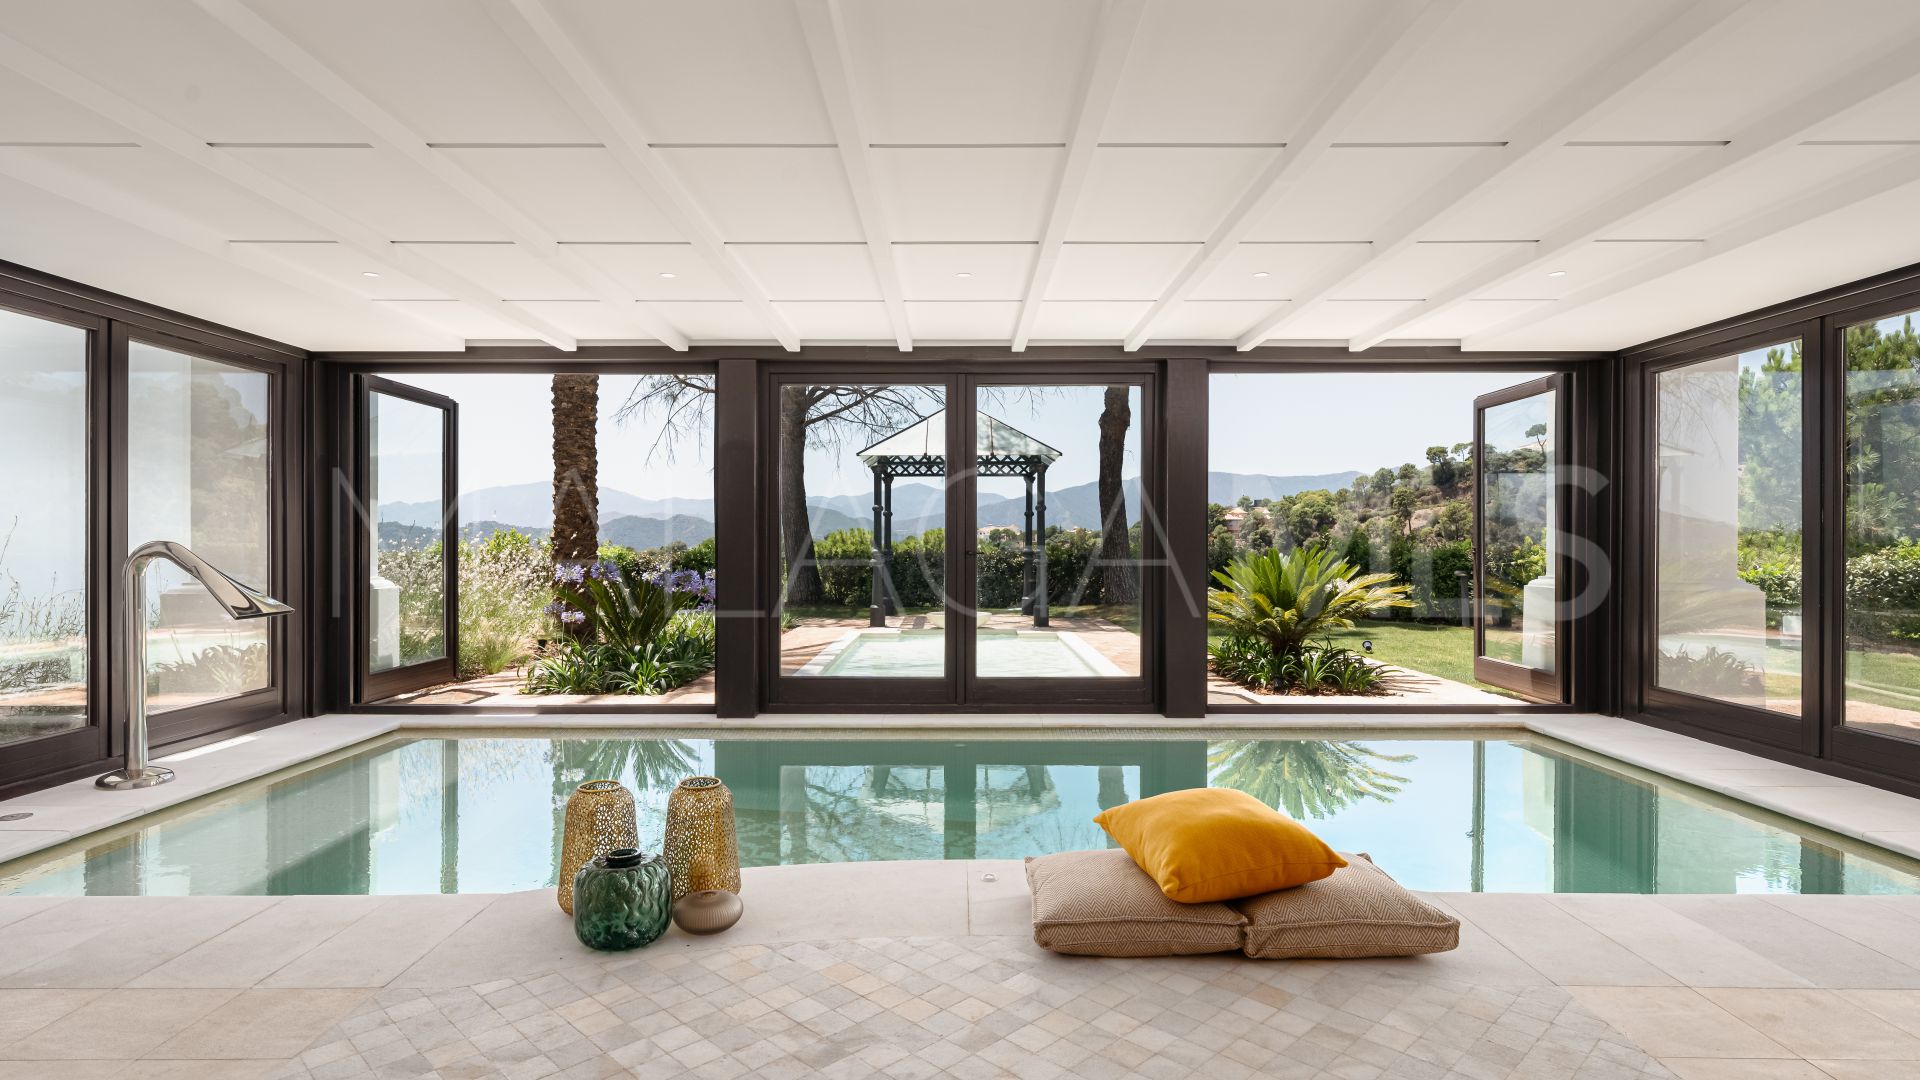 8 bedrooms villa for sale in La Zagaleta